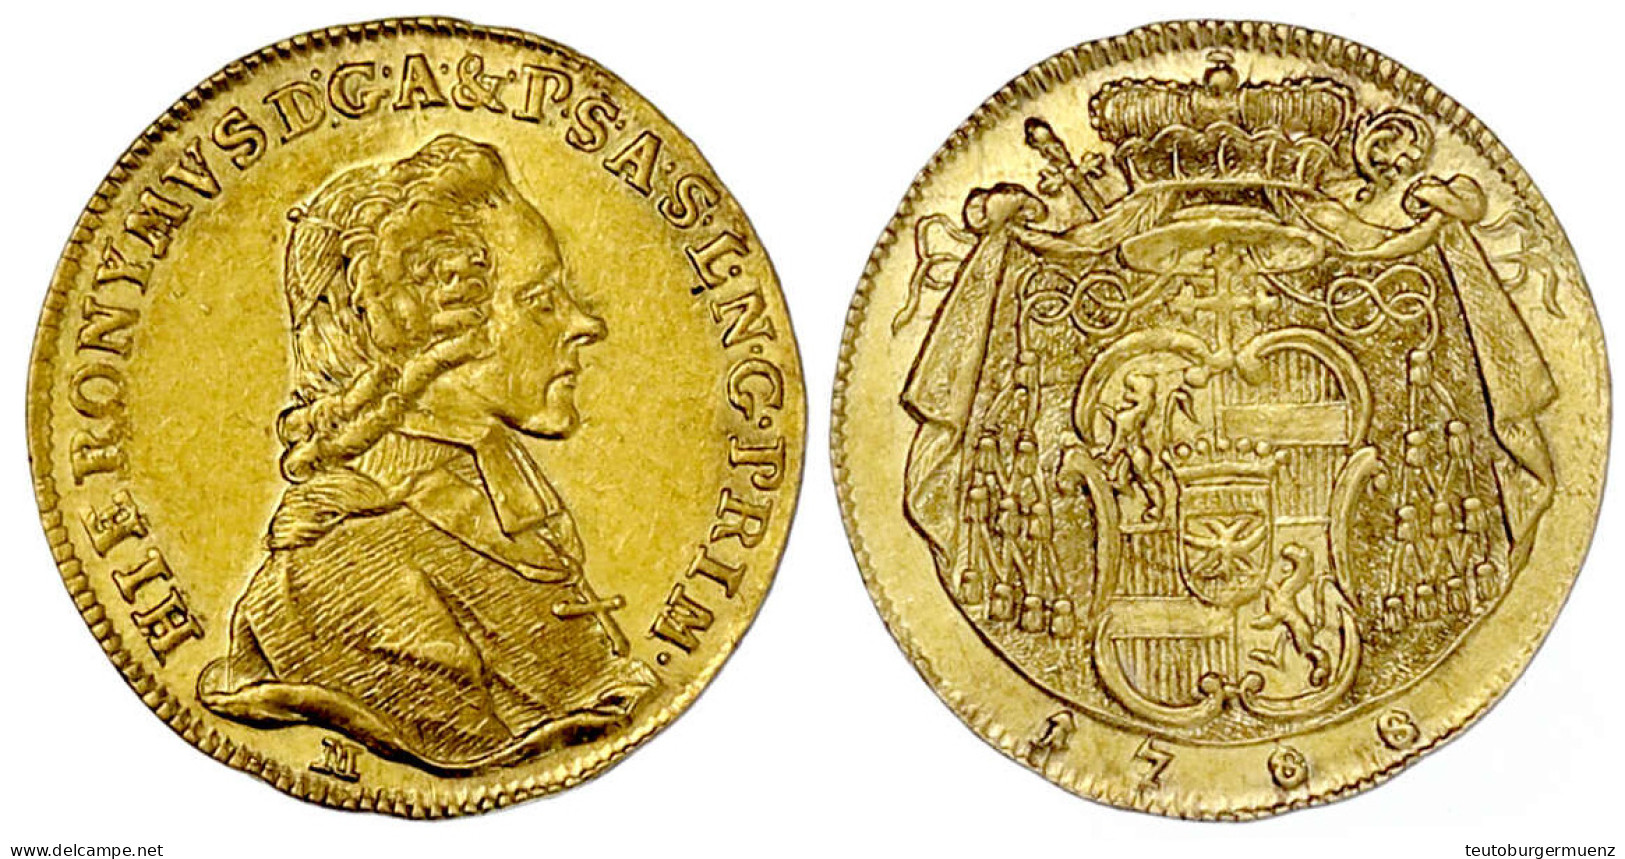 Dukat 1788 M. 3,48 G. Vorzüglich, Kl. Kratzer. Pr. 2403. Zöttl 3154. Friedberg 880. - Gold Coins